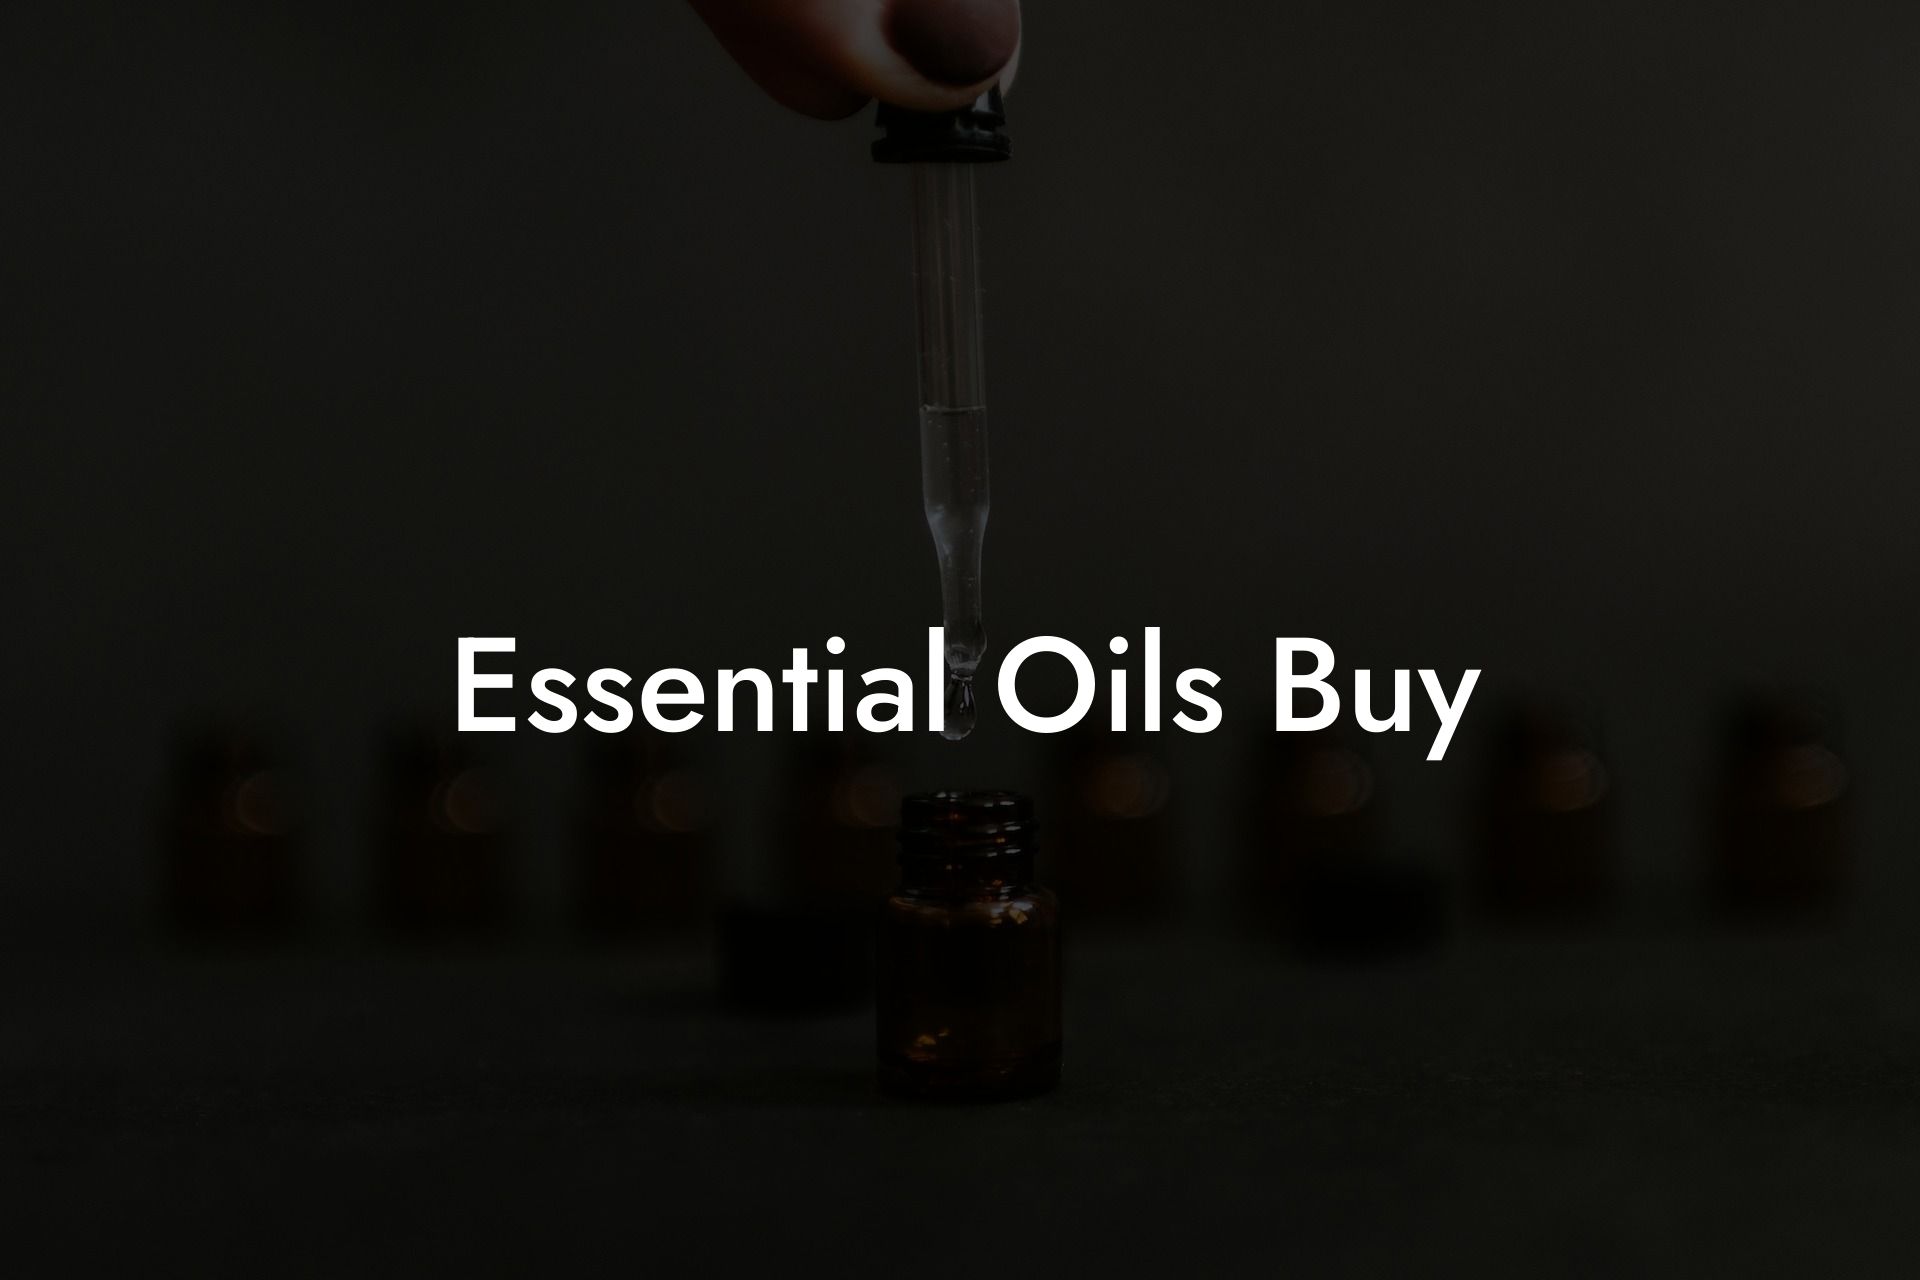 Essential Oils Buy